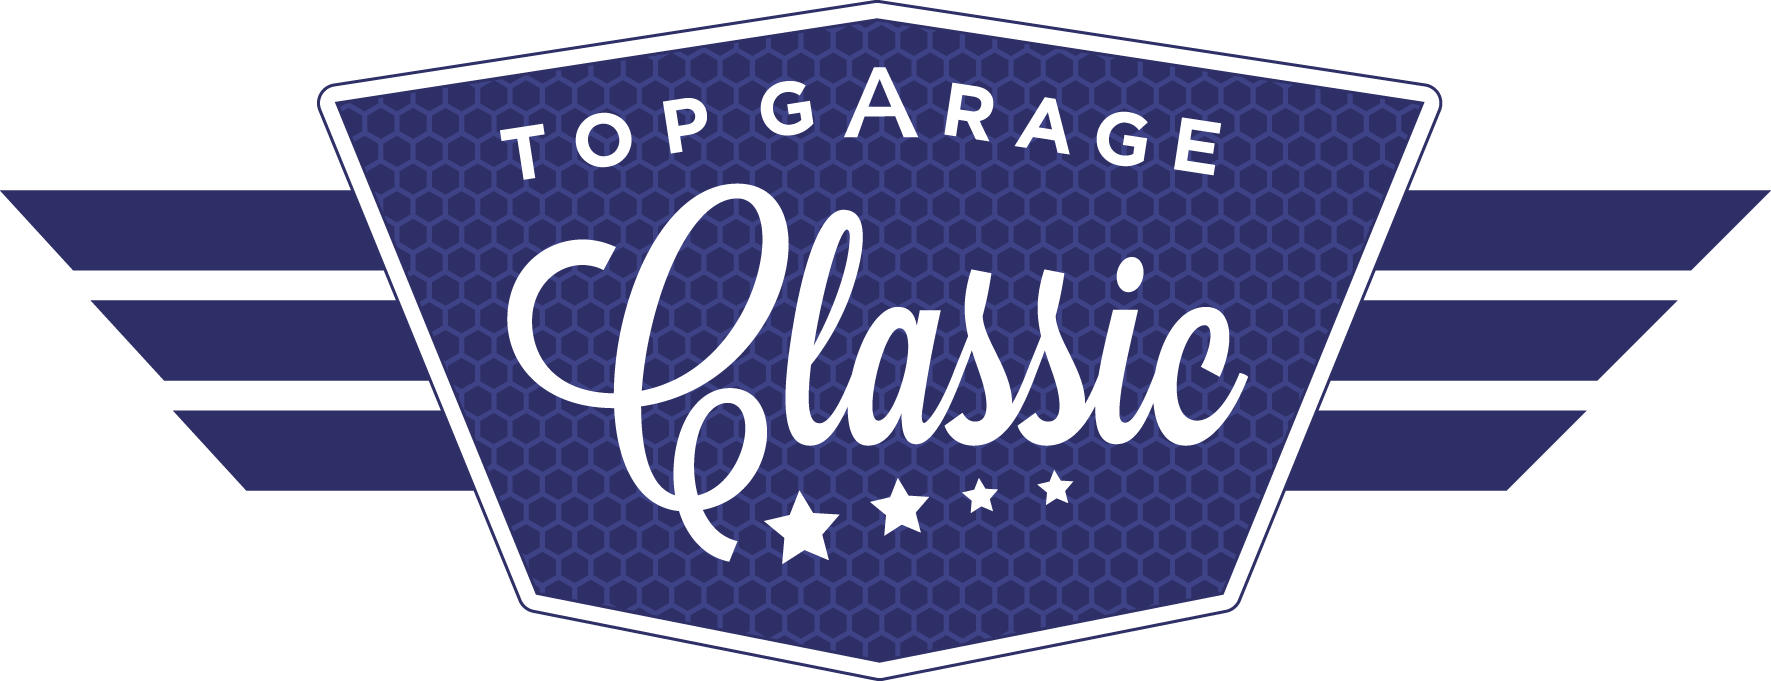 top-garage-classic-logo-hd